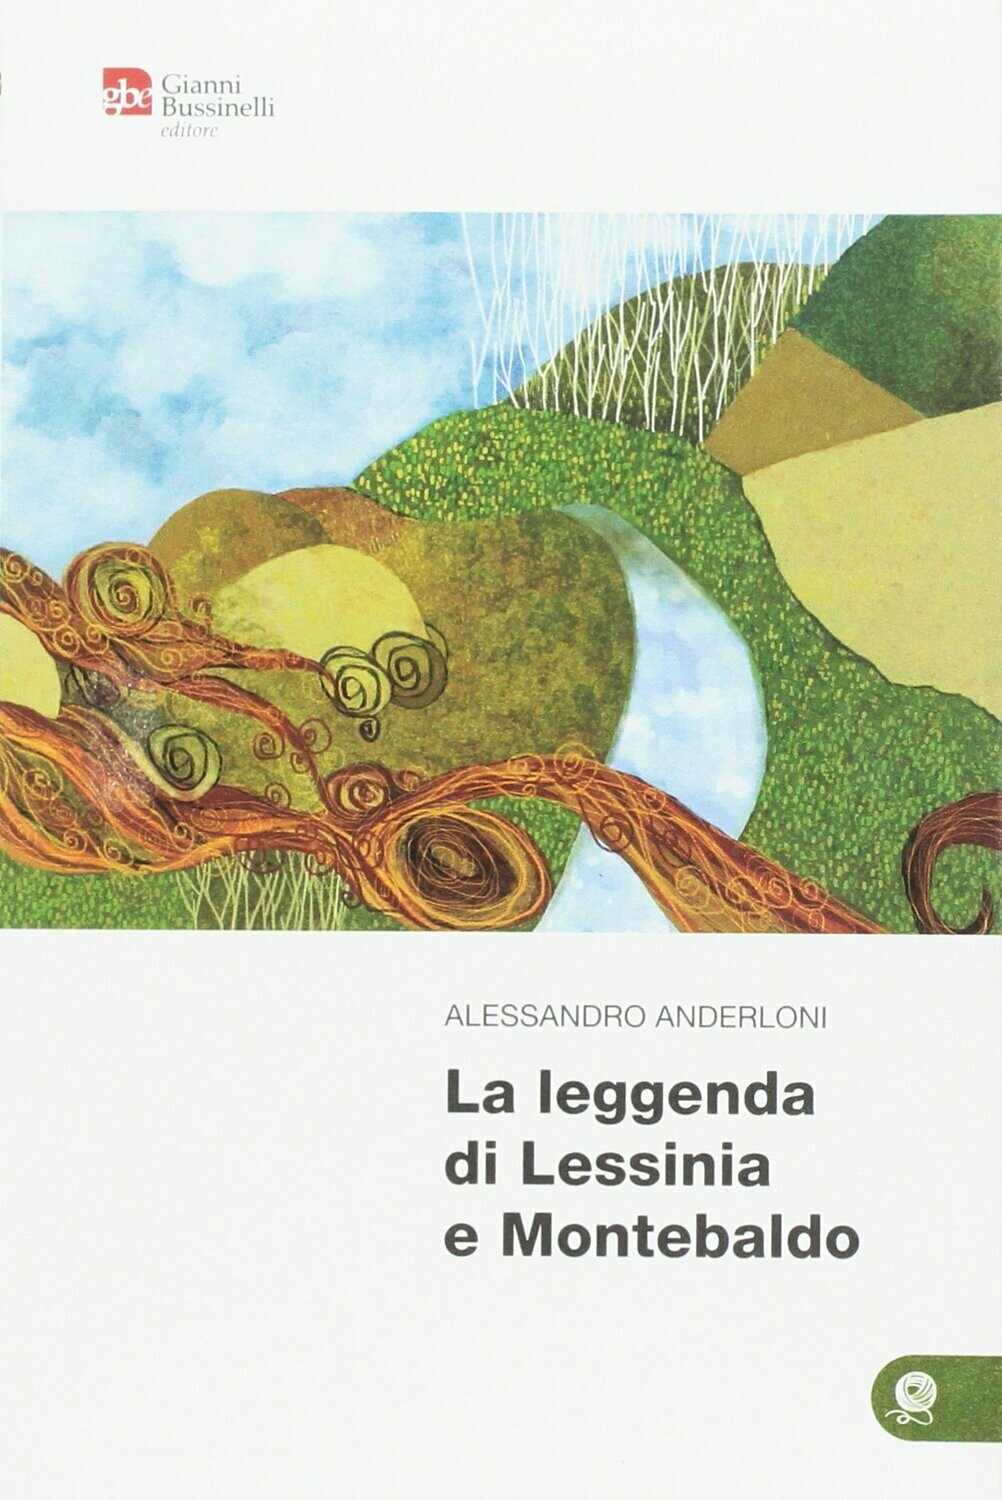 La leggenda di Lessinia e Montebaldo